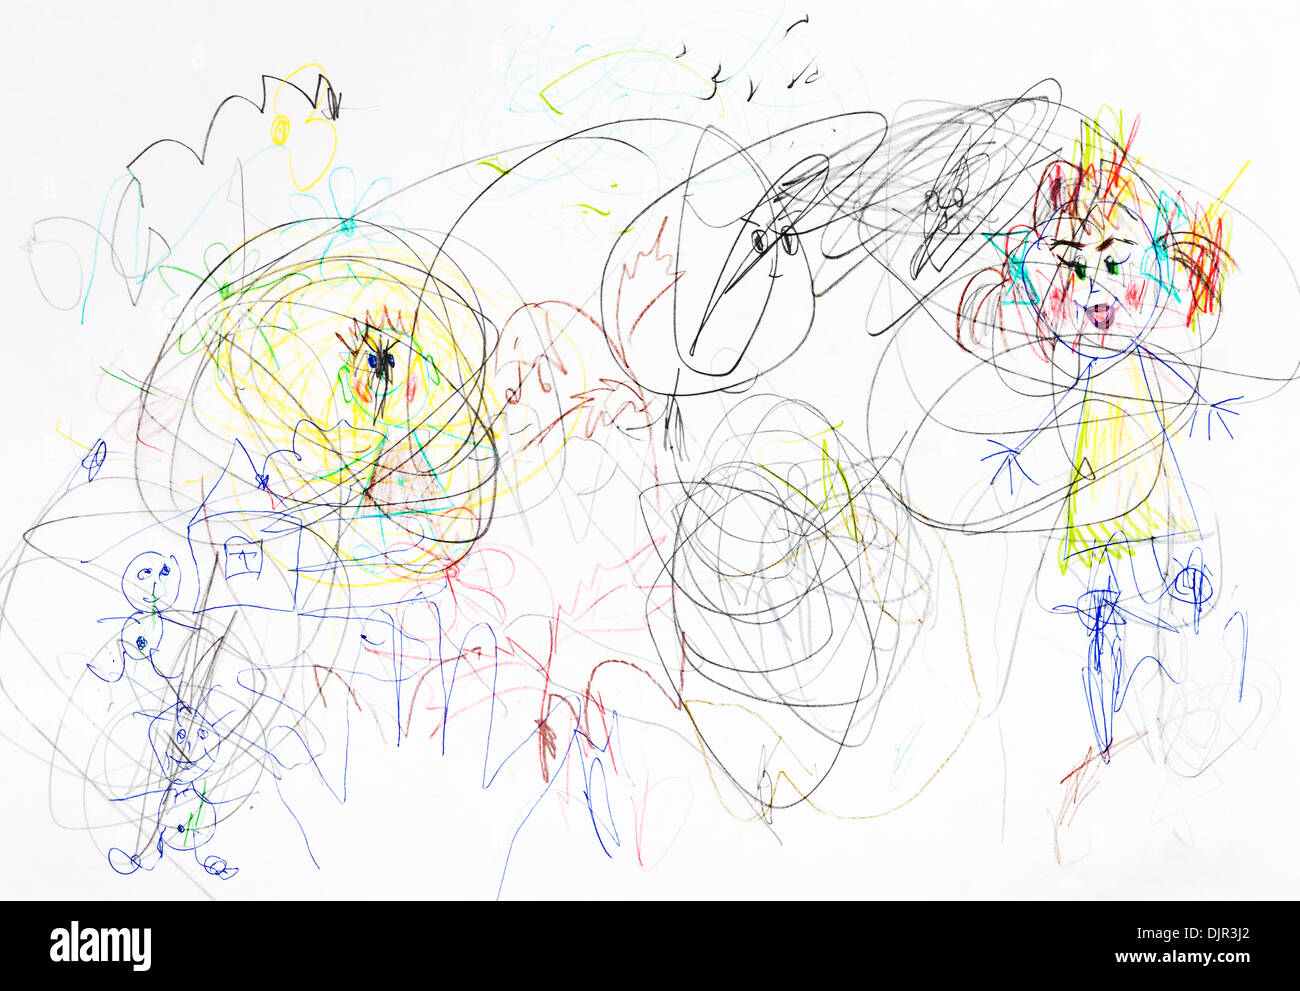 Los niños dibujo - caos en crianza familiar Foto de stock